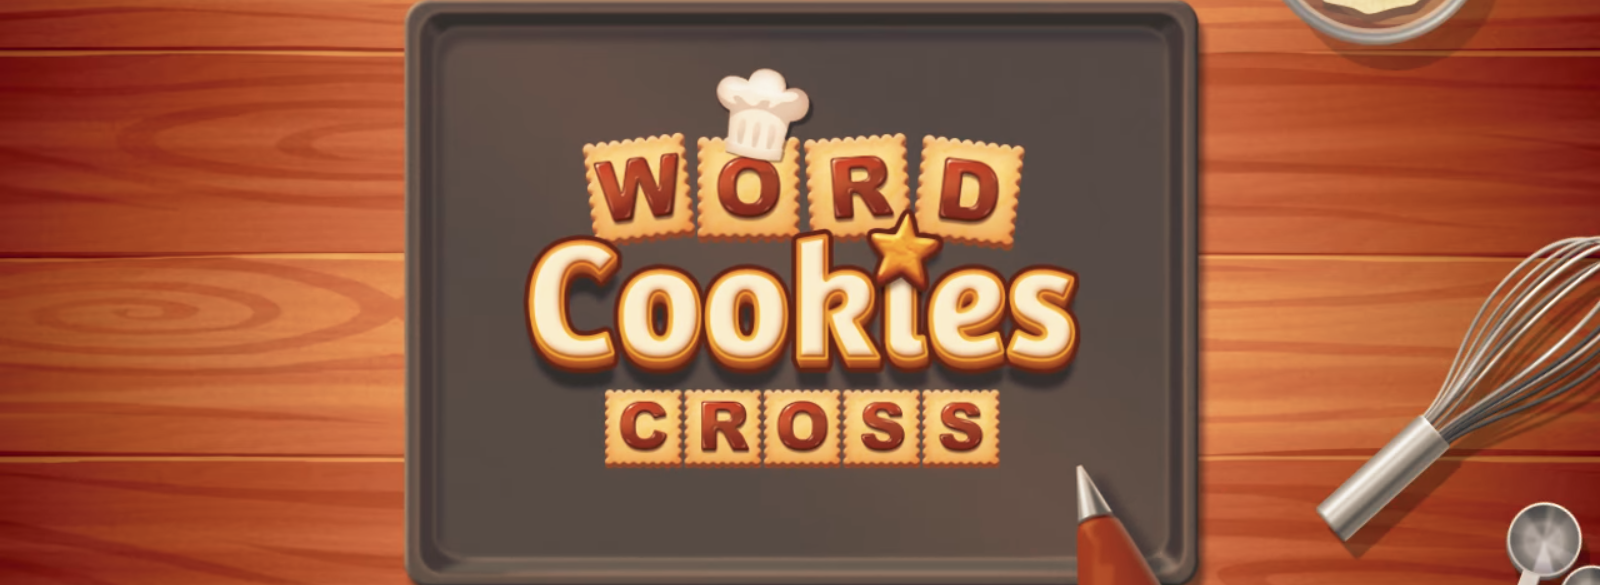 WordCookies Cross